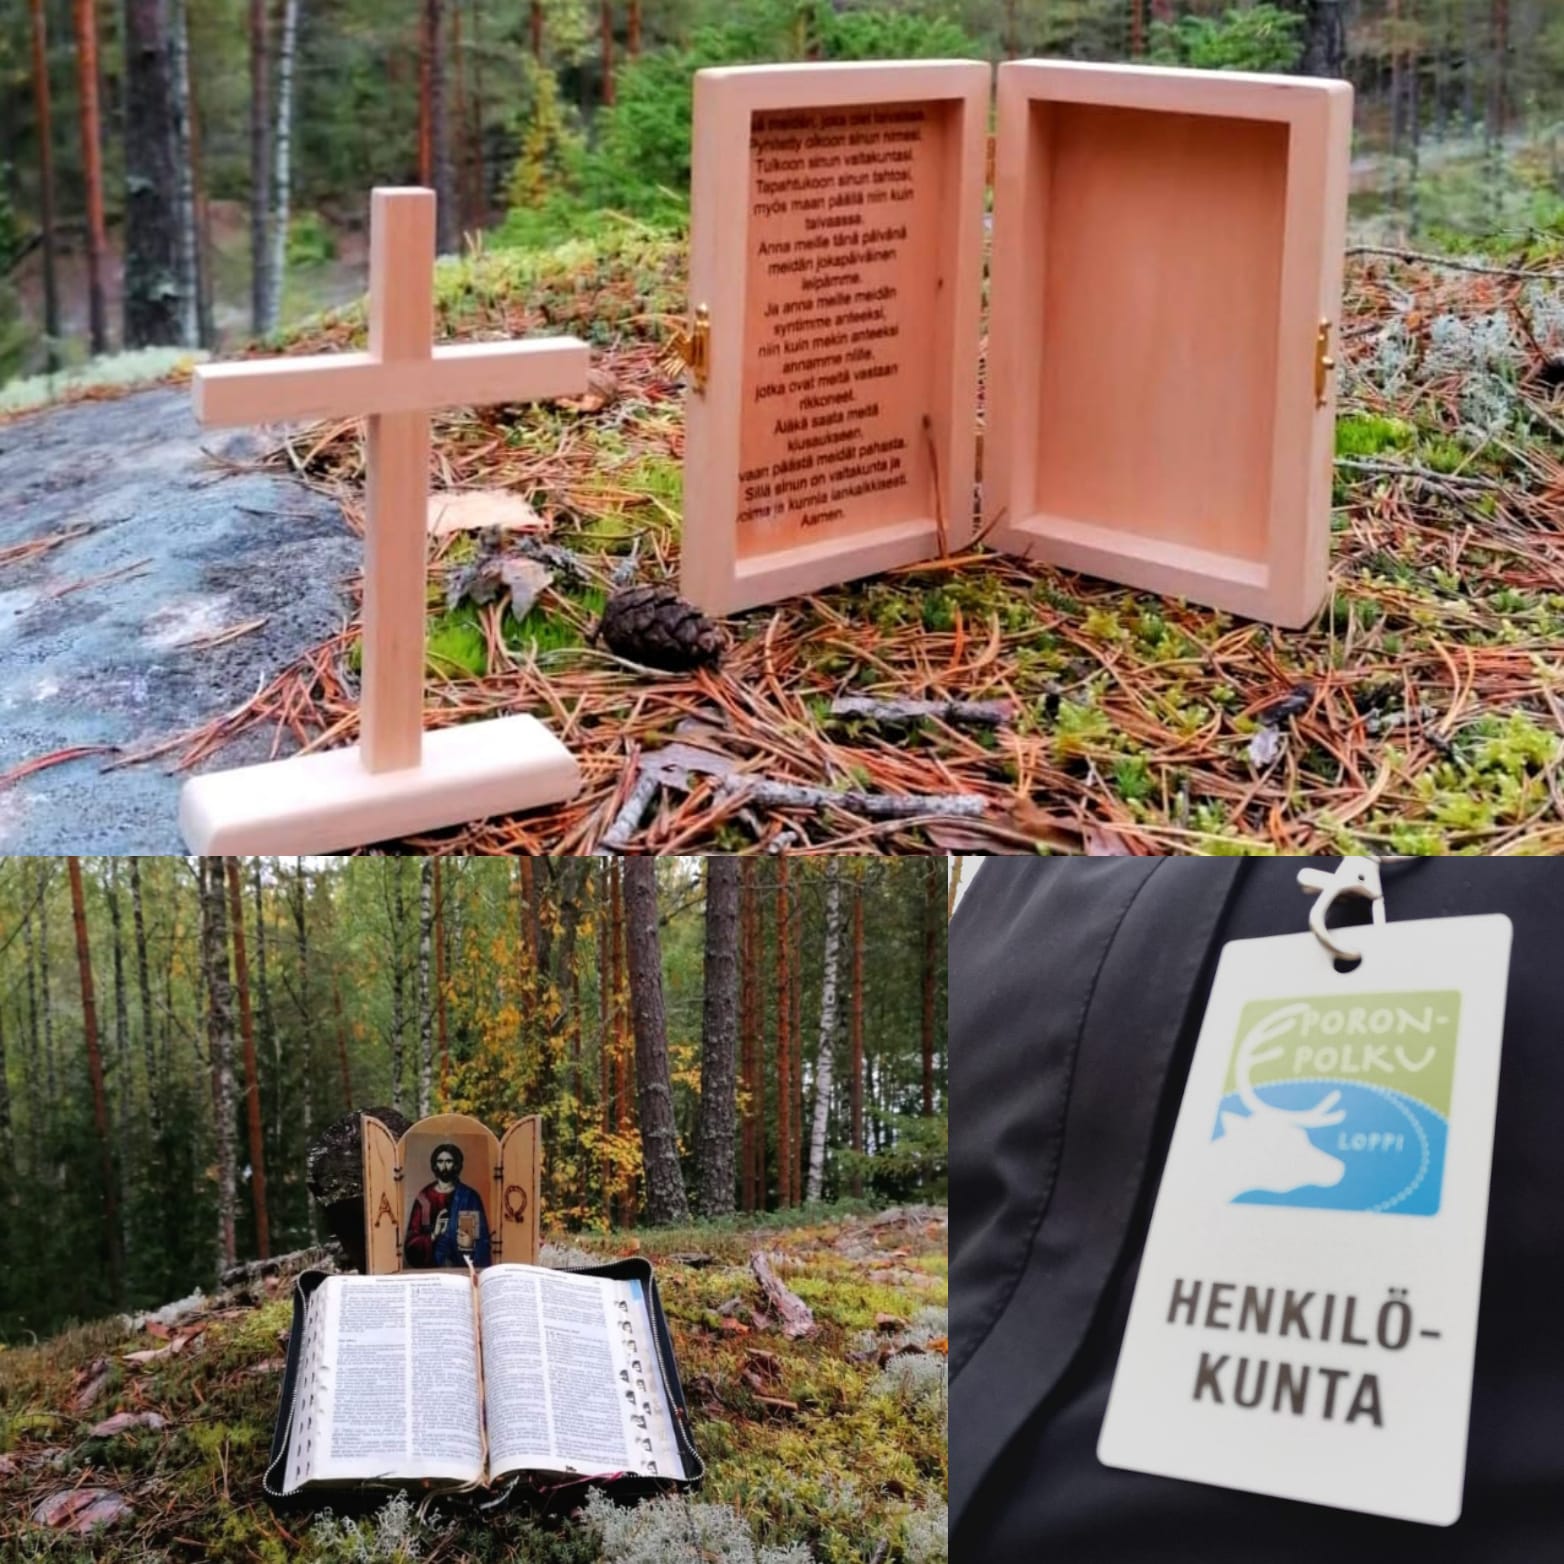 Kuvassa matka-alttareita metsässä ja Poronpolun henkilökuntakortti.